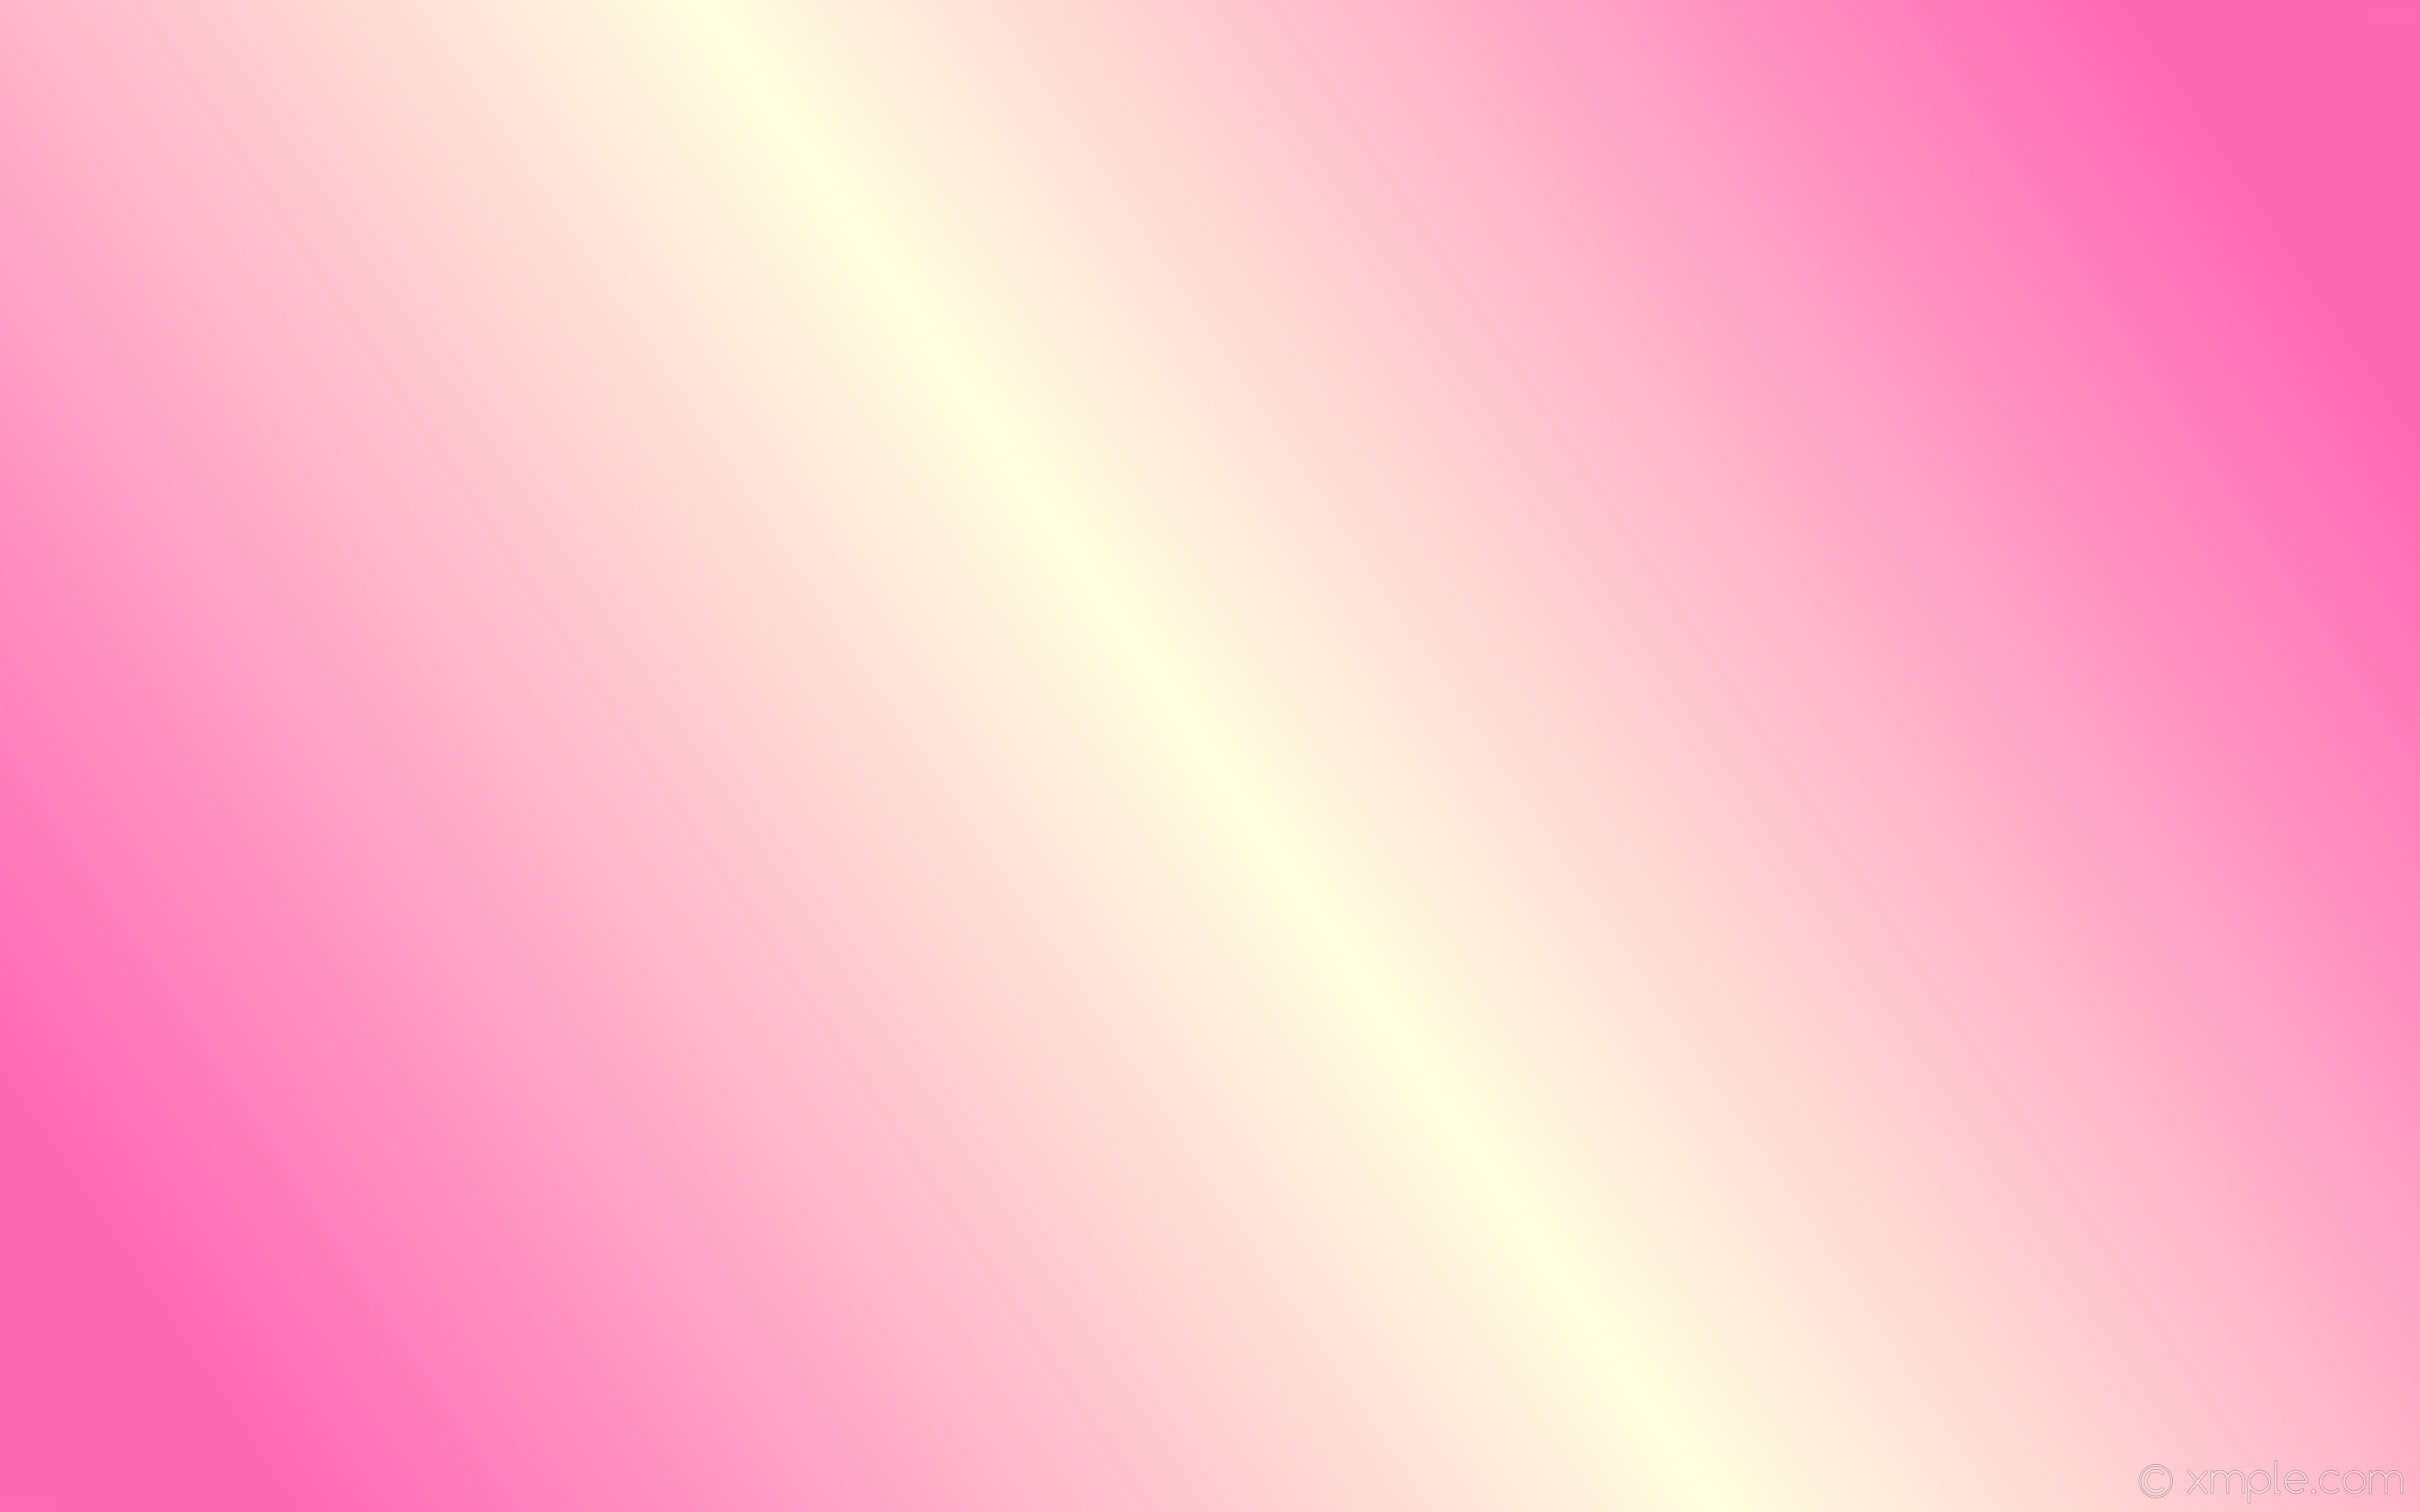 2880x1800 ... Wallpaper linear highlight gradient pink blue #87ceeb #db7093 330Â° 50%  ...